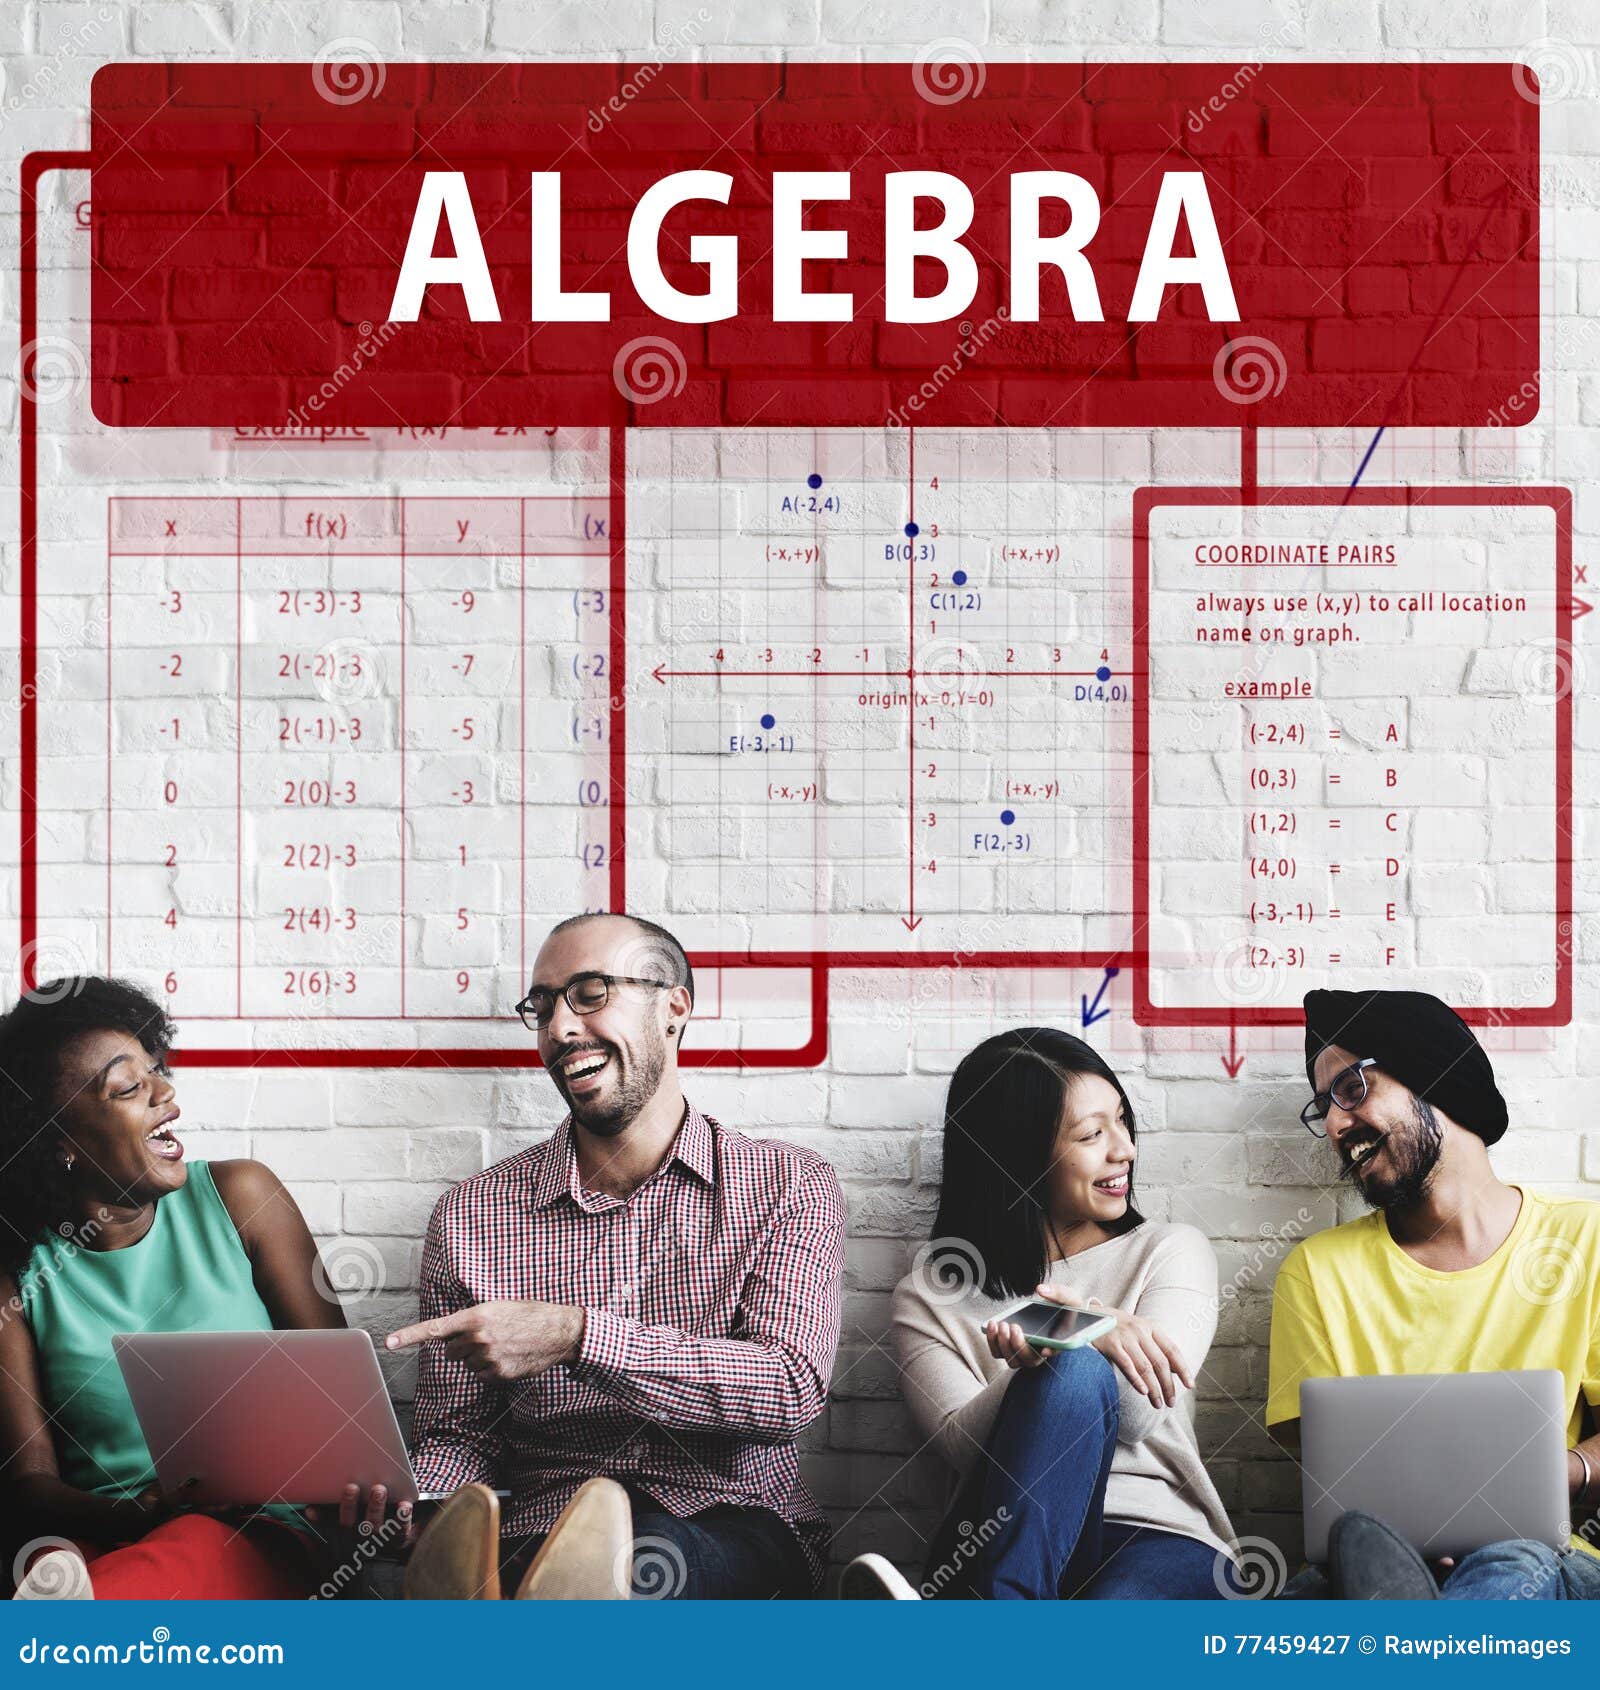 Algebra Mathematics Chart